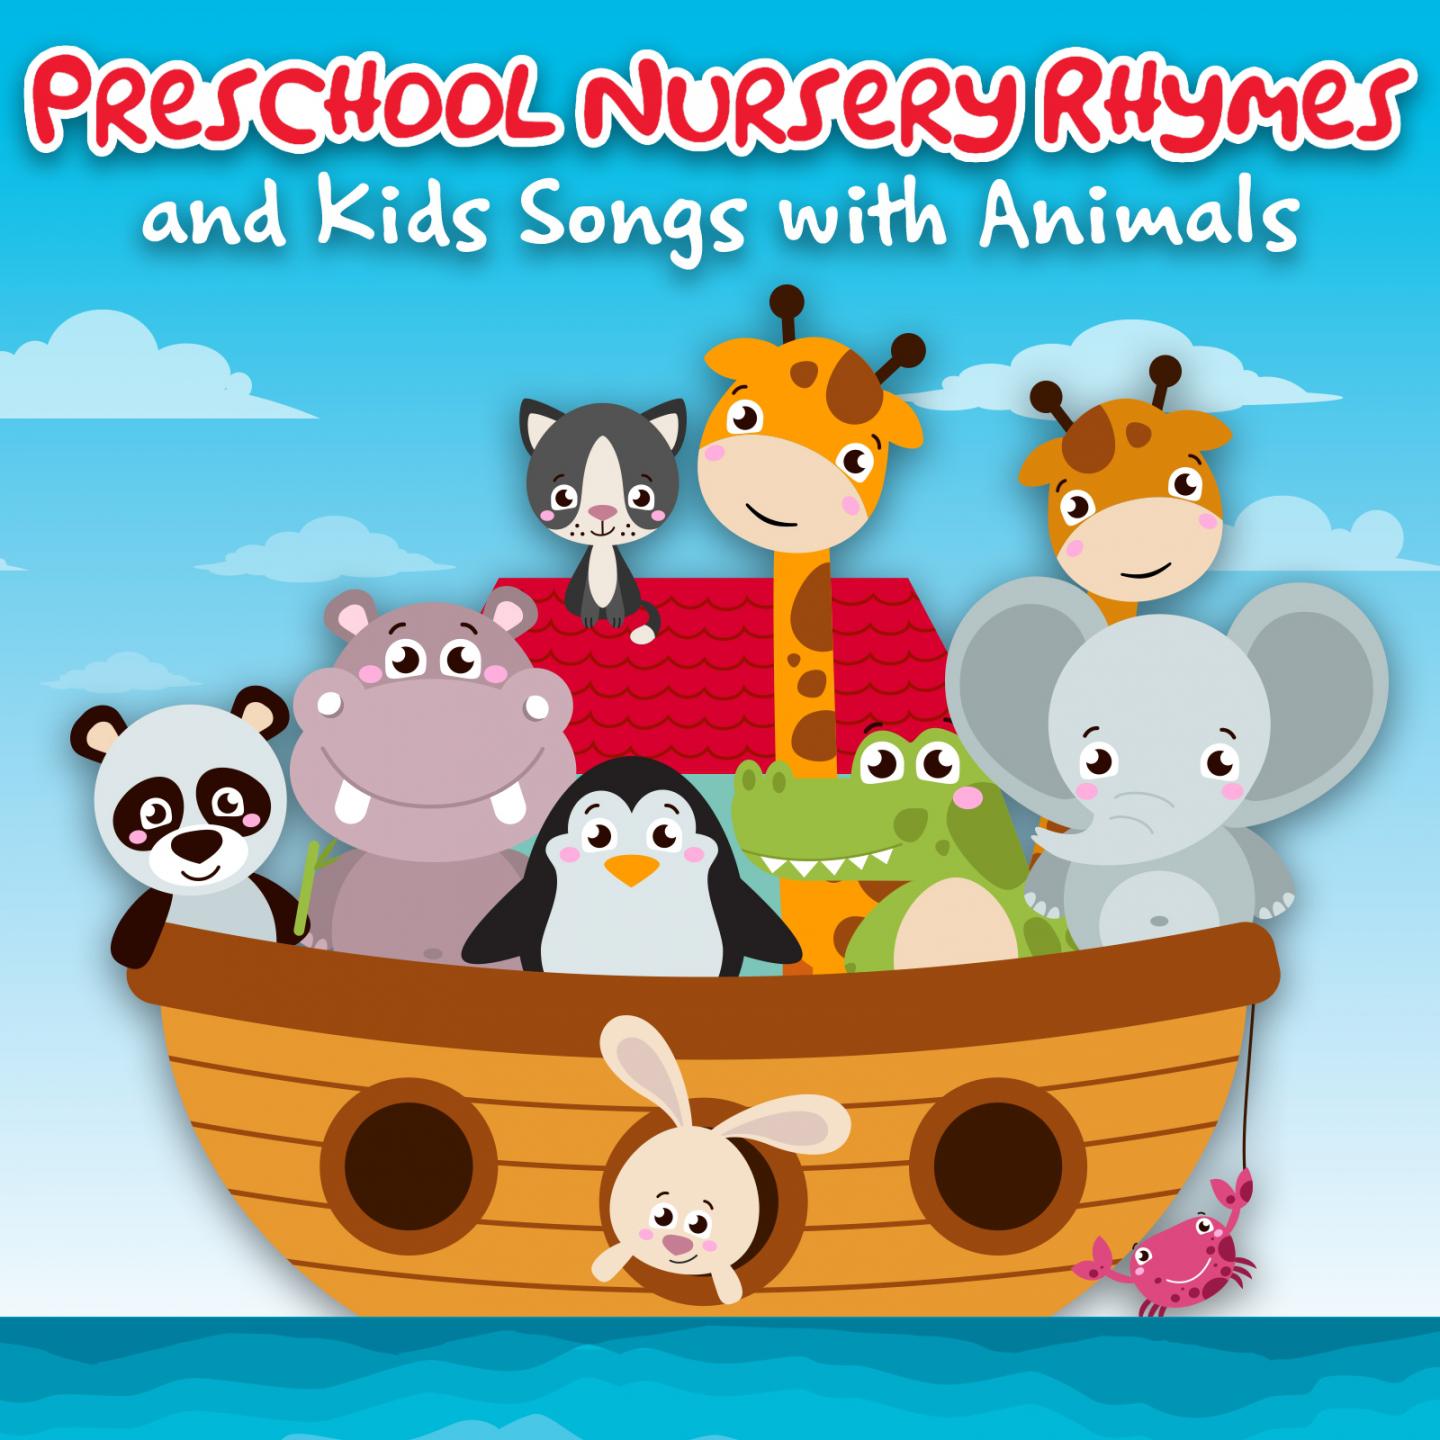 Preschool Nursery Rhymes and Kids Songs with Animals